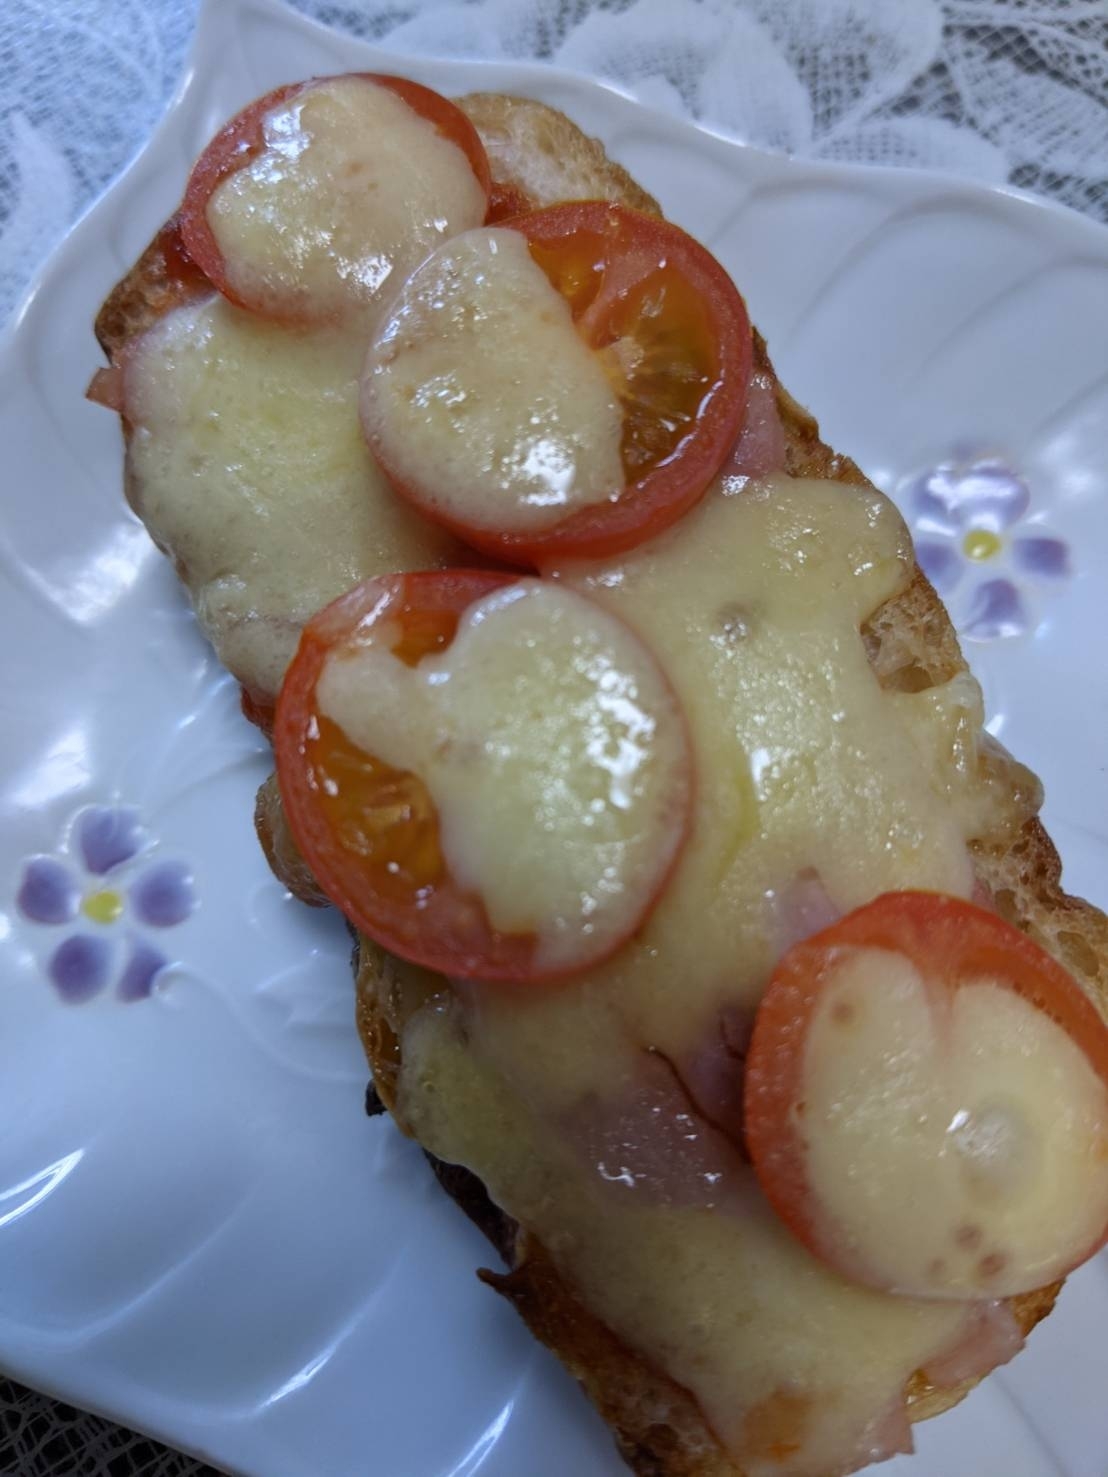 フランスパンで作るハムとトマトのオープンサンド